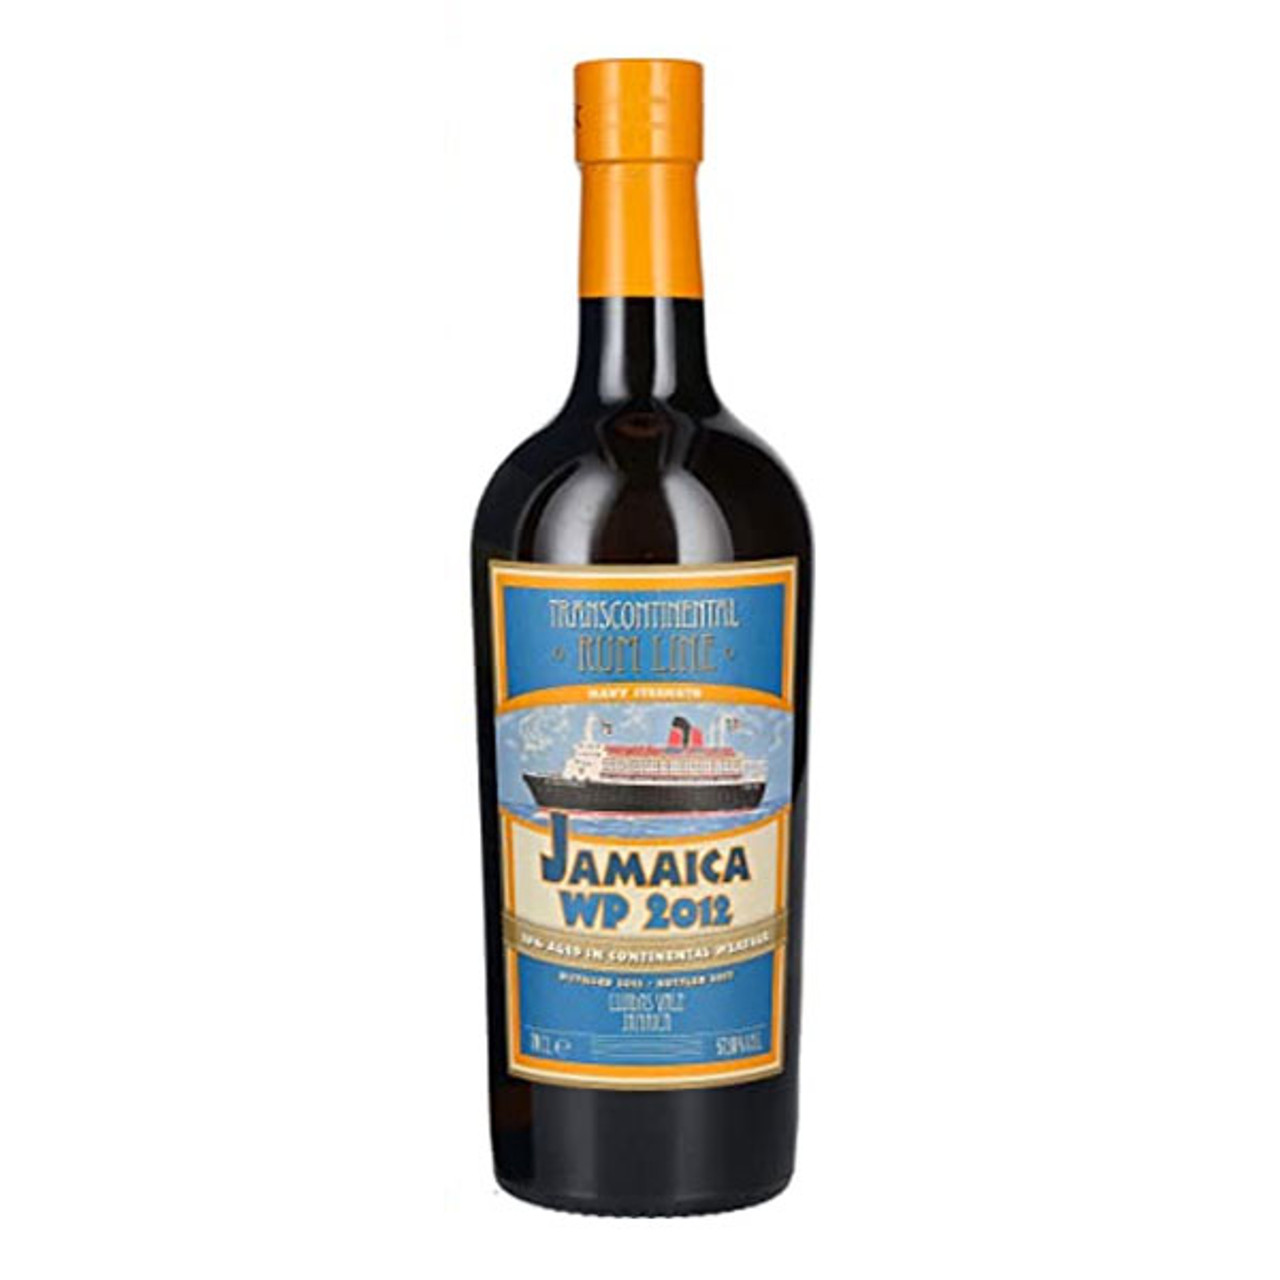 Diplomatico Reserva Exclusiva Rum 750mL - Wally's Wine & Spirits